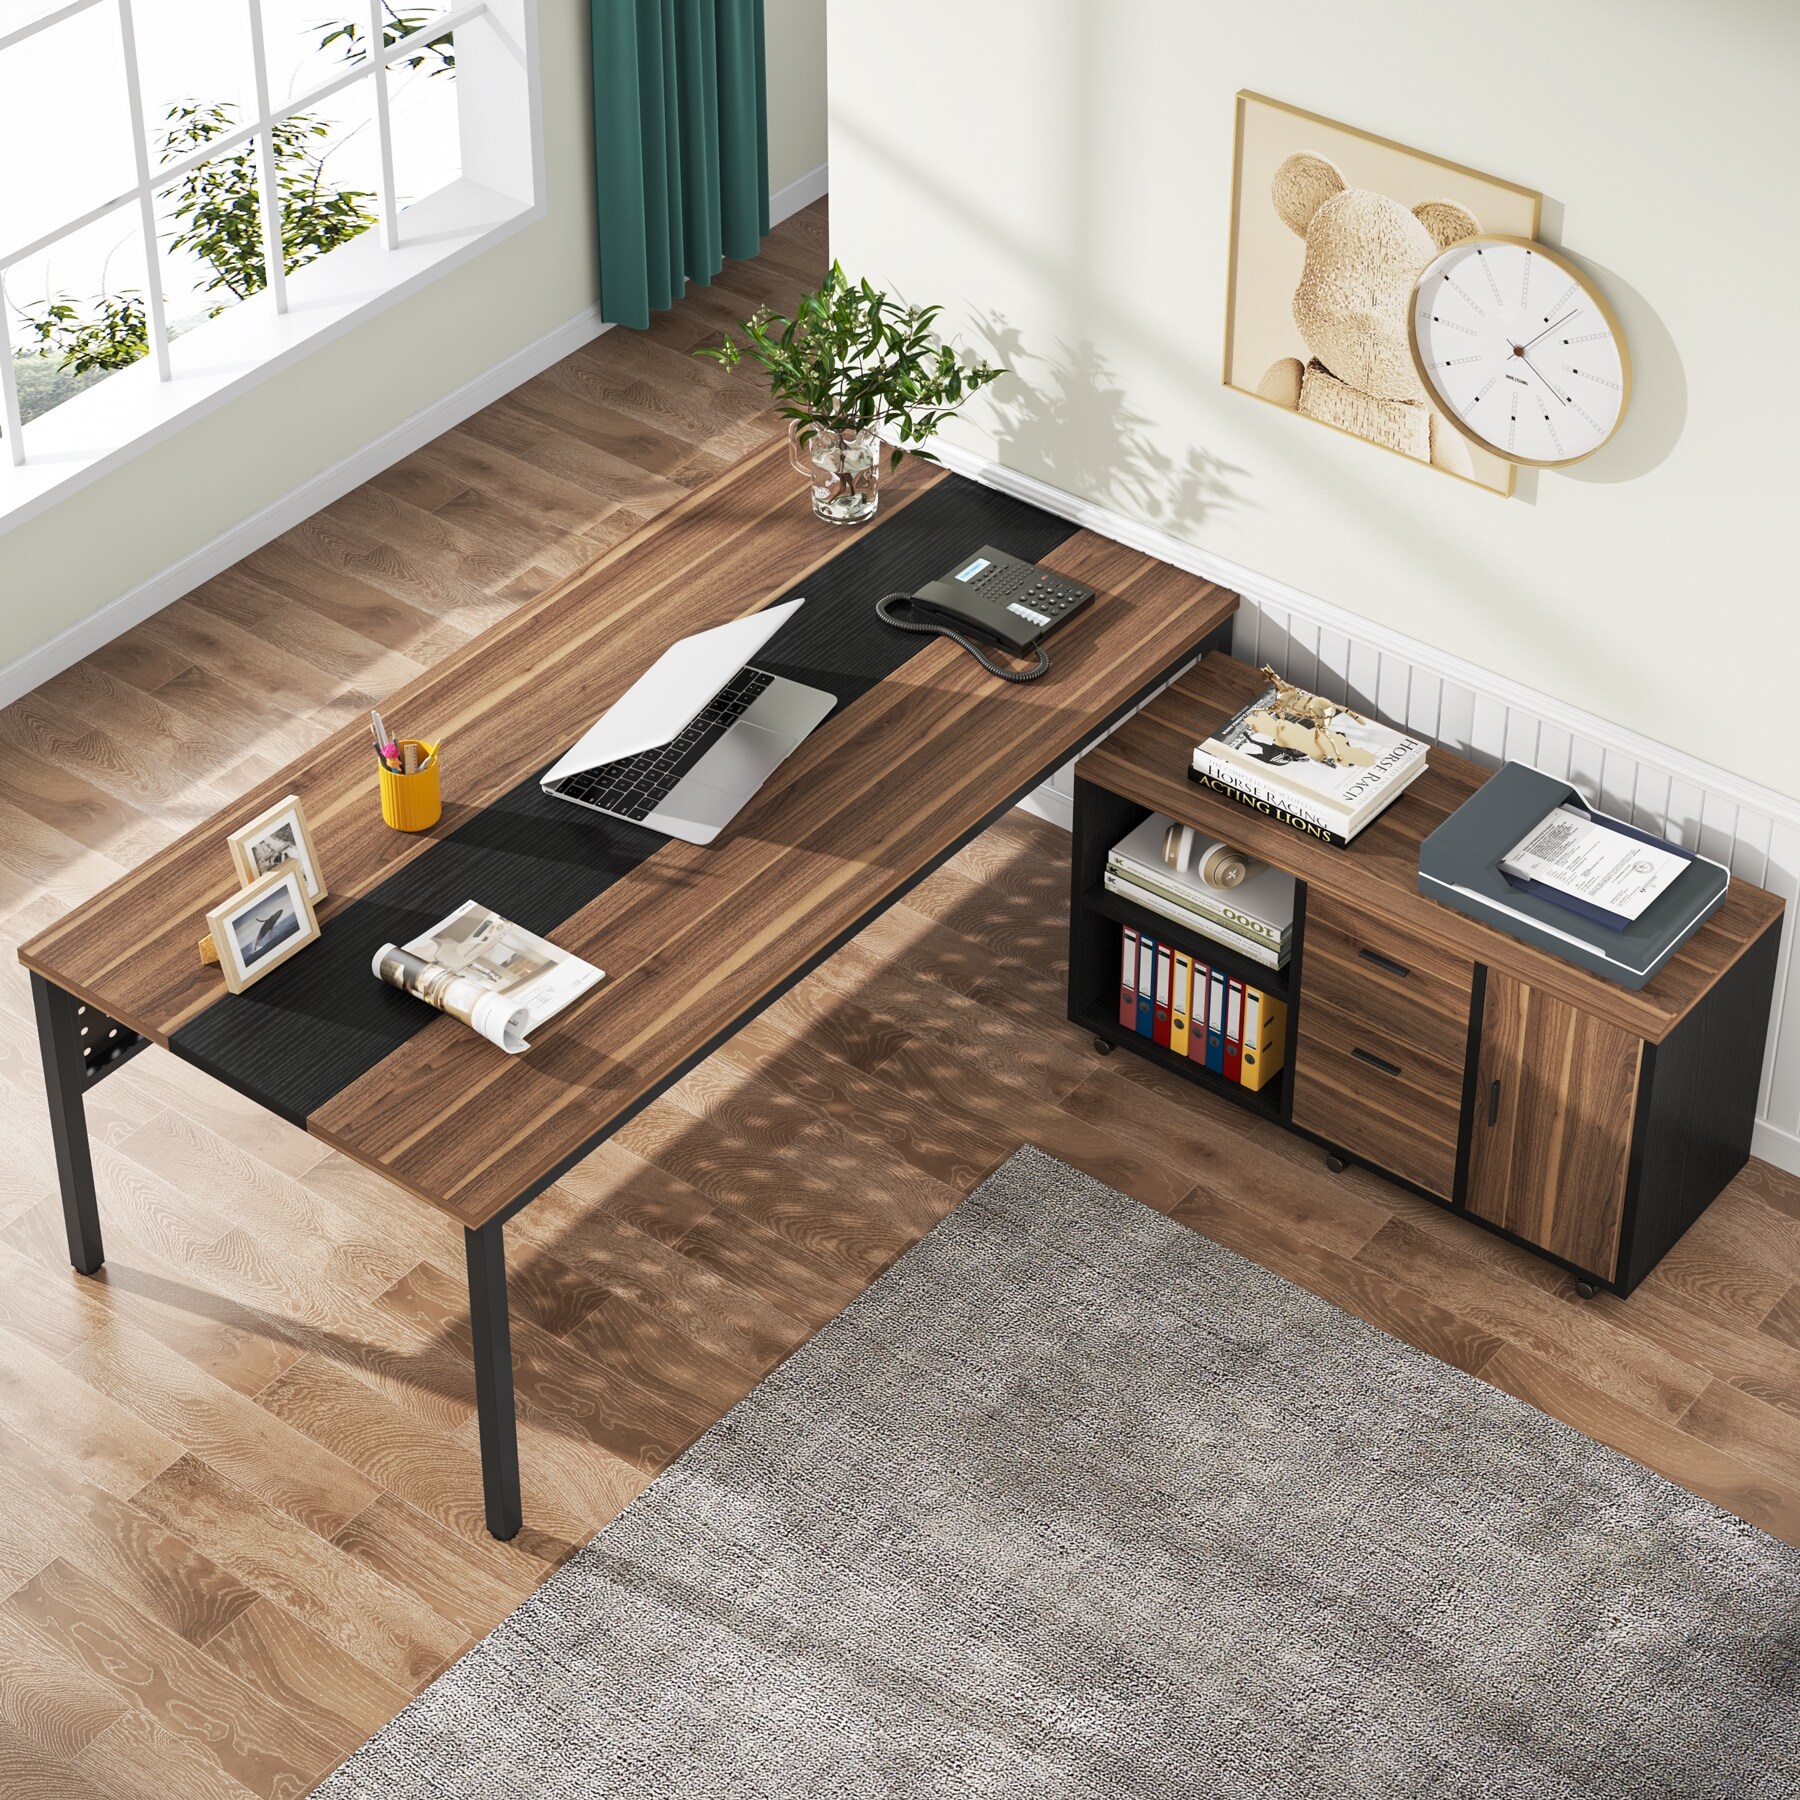 1.4 M. Office Desk @ HOG-Home, Office, Gaden Furniture